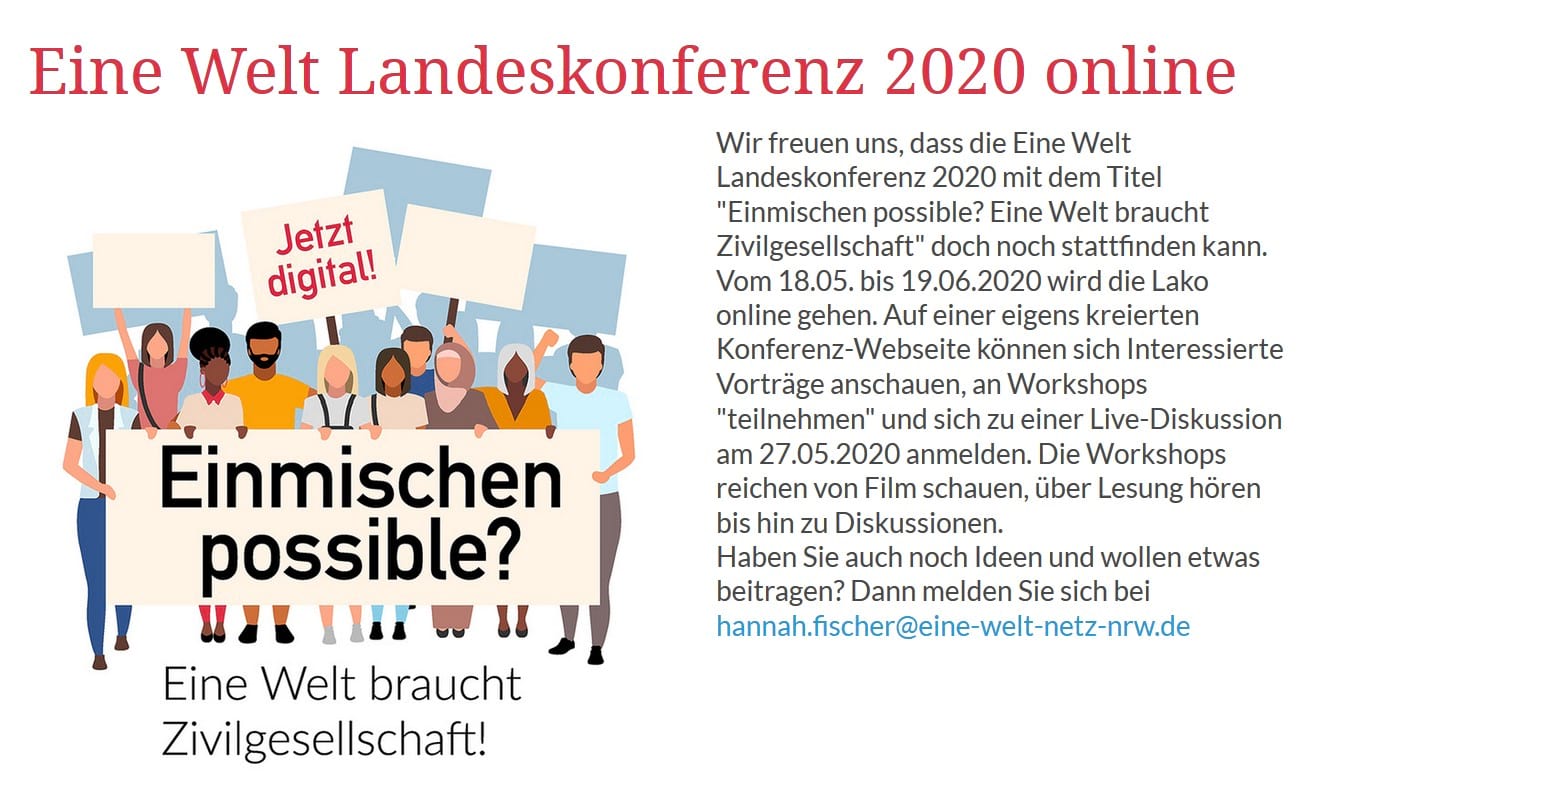 Eine Welt Landeskonferenz 2020 online